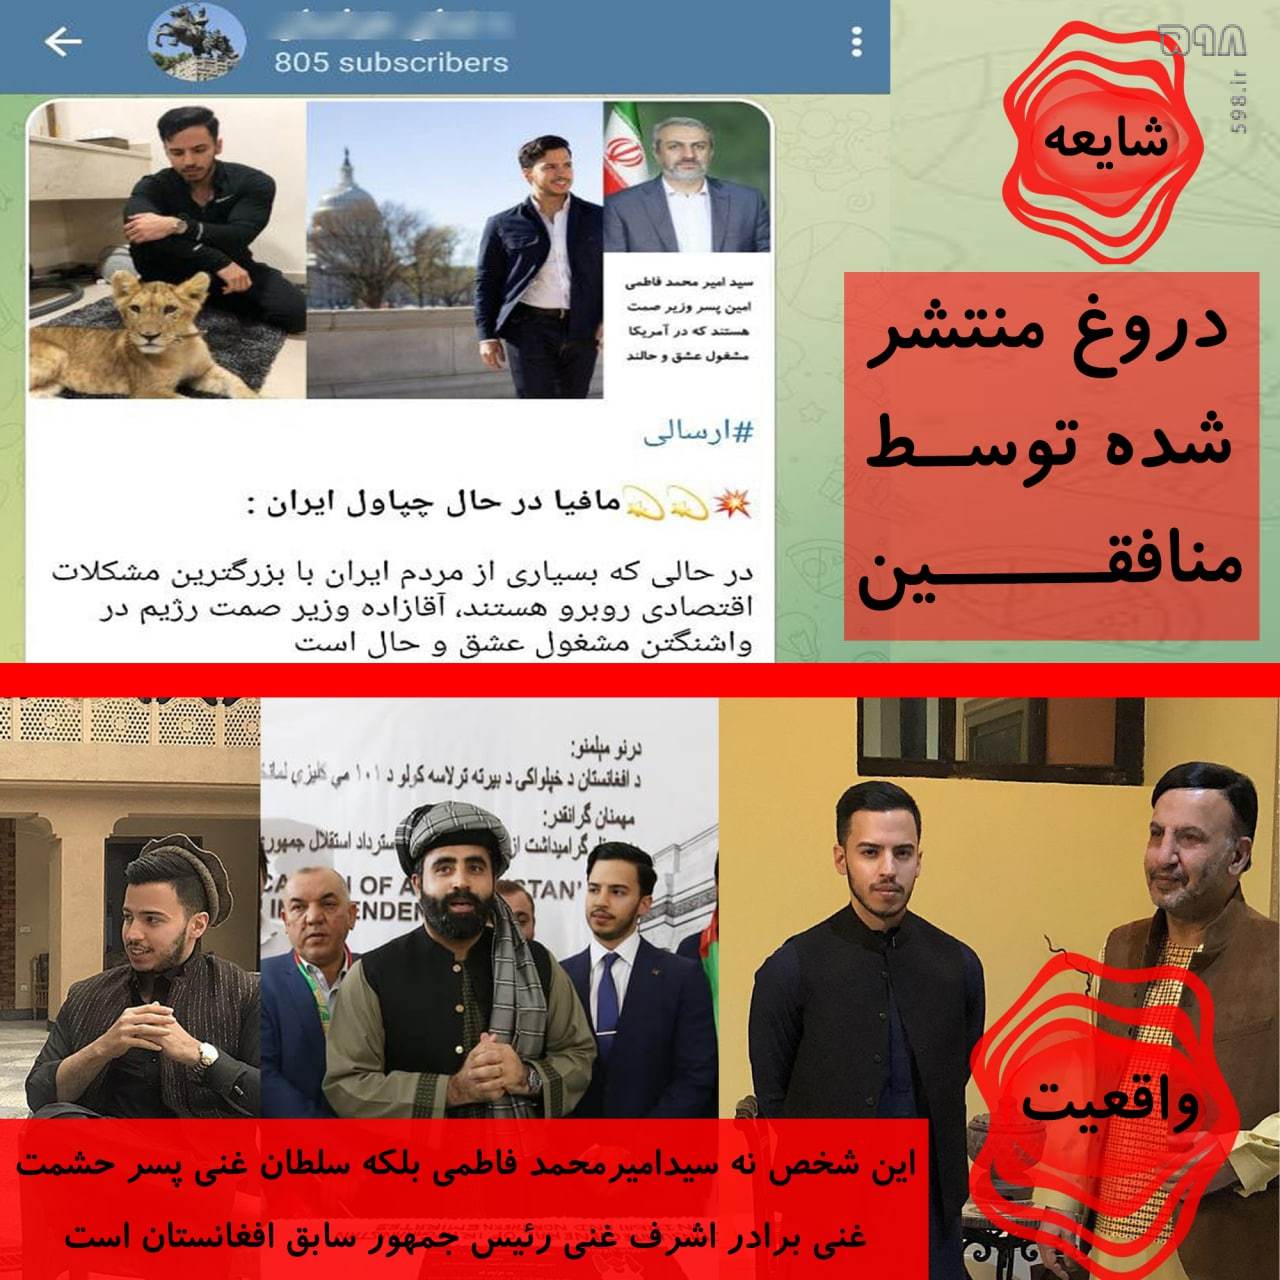 جا زدن برادرزاده رئیس جمهور سابق افغانستان به عنوان فرزند وزیر صمت جمهوری اسلامی!